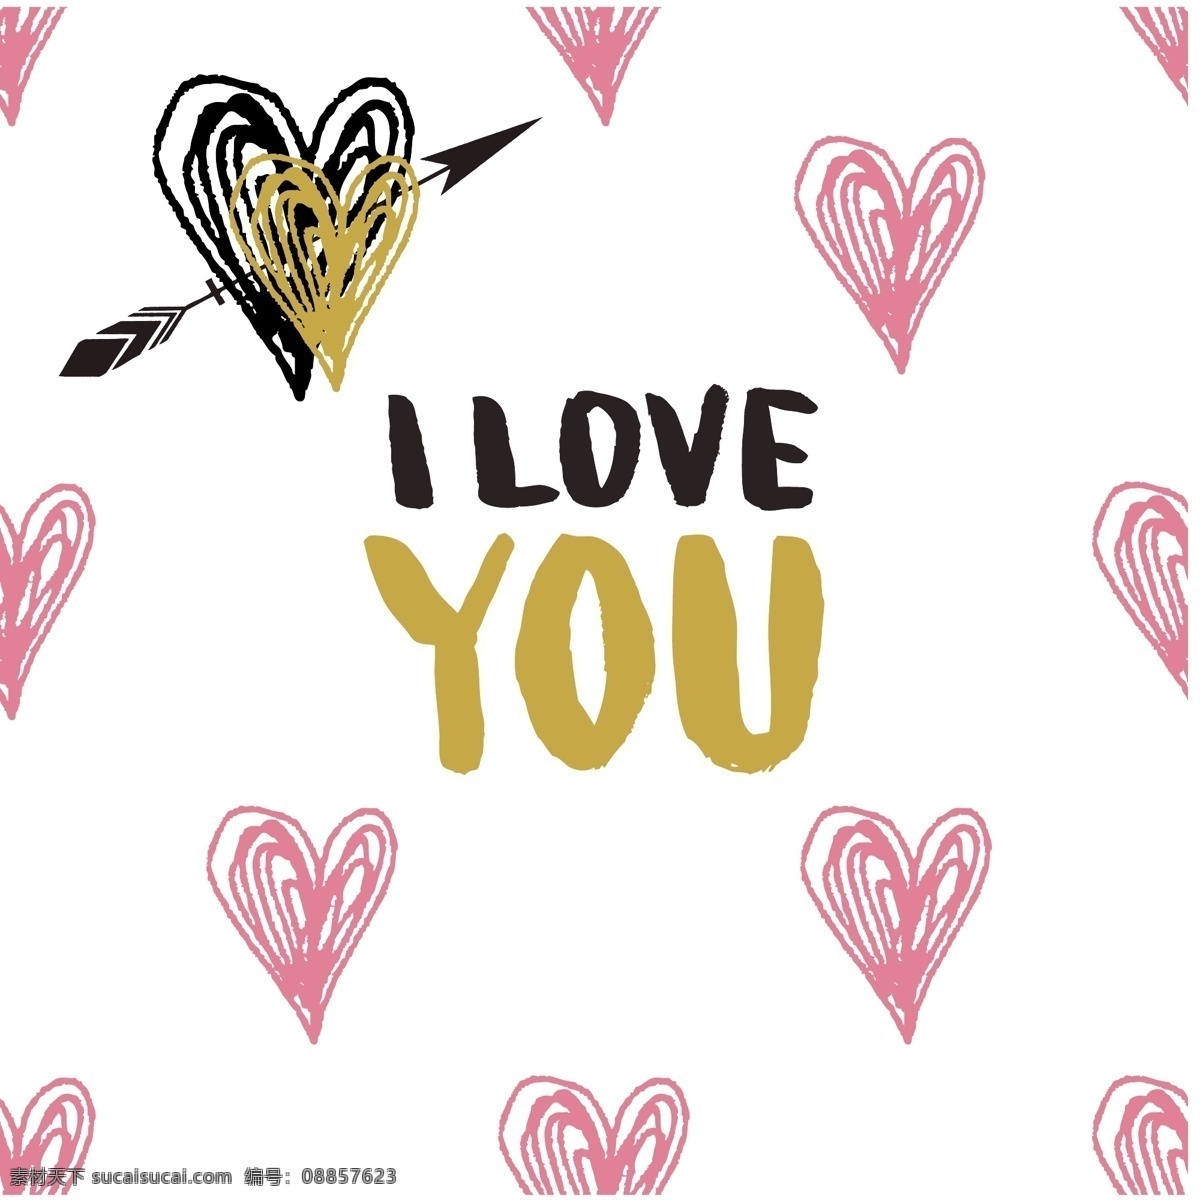 情人节 海报 时尚 潮流 铂金 黑金色 爱心 英文字母 海报背景 卡片 贺卡 矢量素材 抽象 创意 图案 立体设计 高端 粉色浪漫